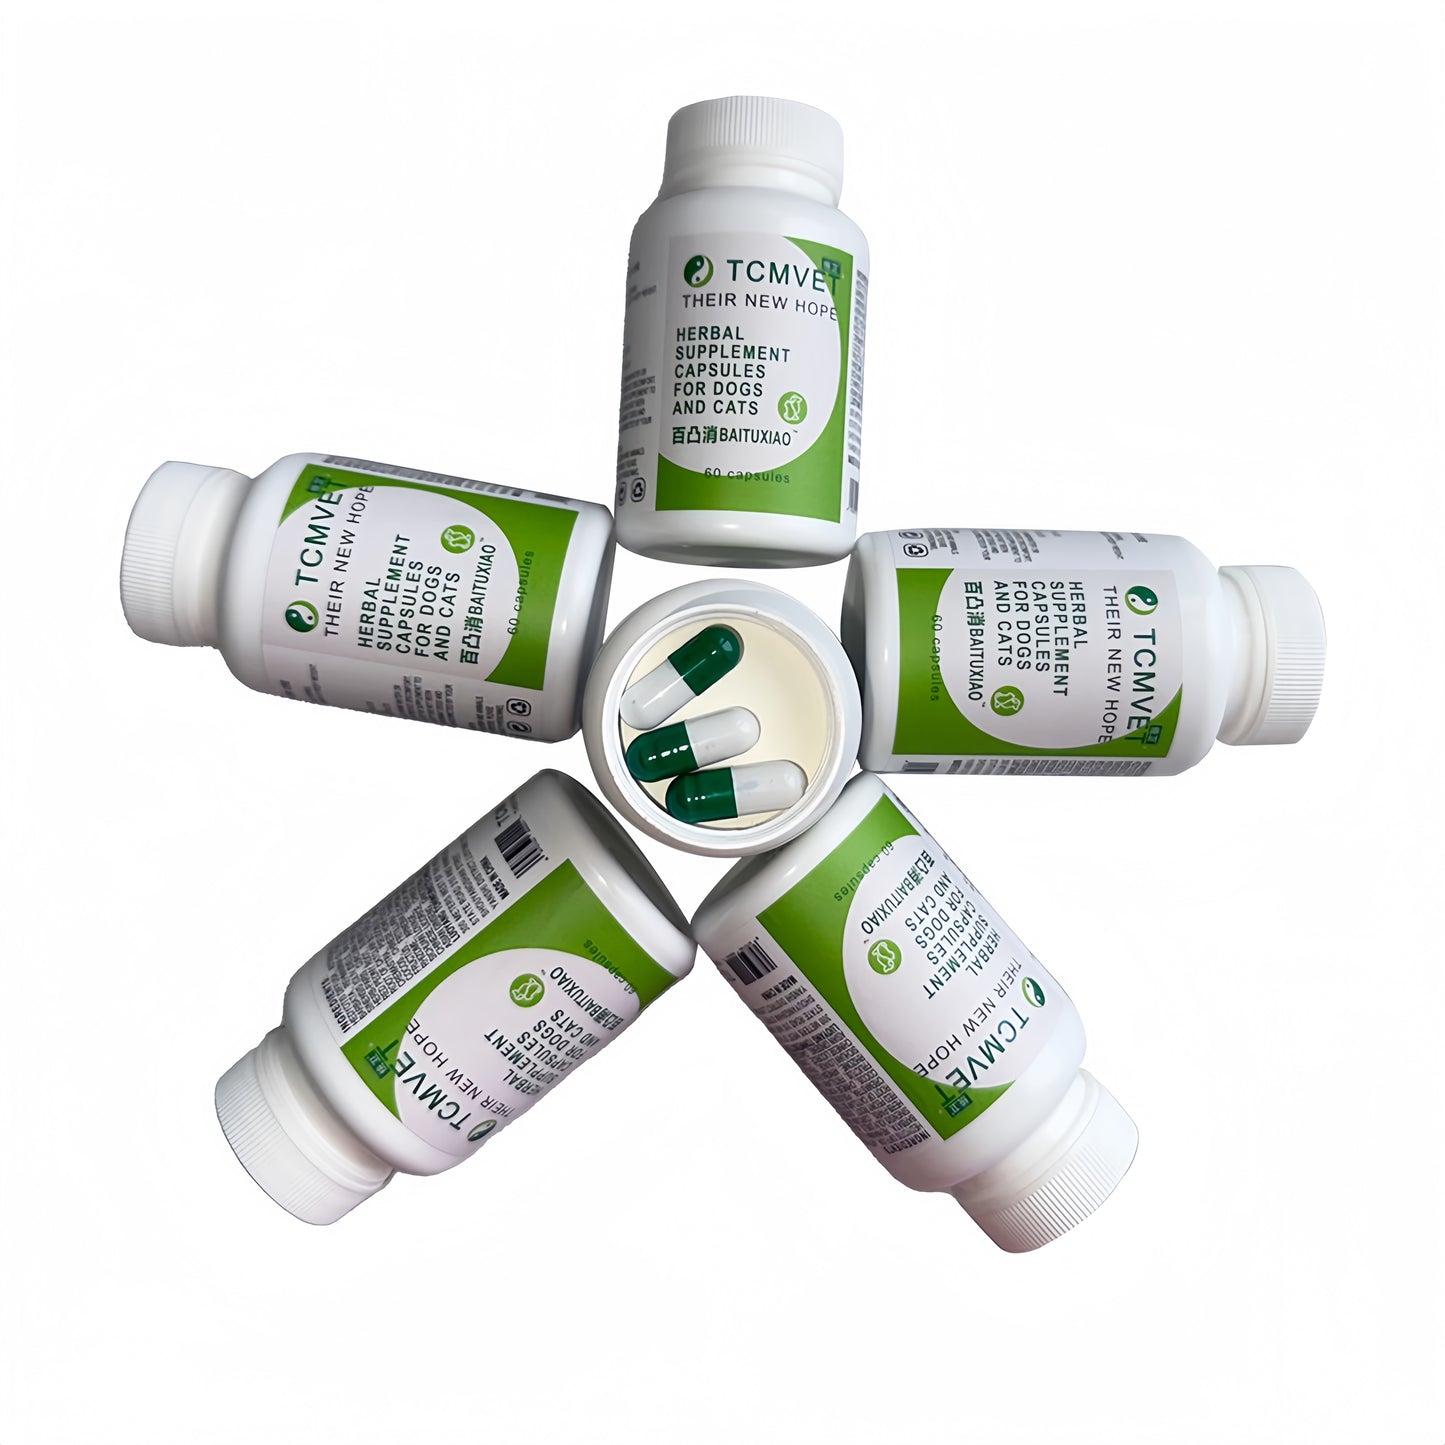 TCMVET Baituxiao Comprehensive Formula Herbal Supplement-Five Bottles